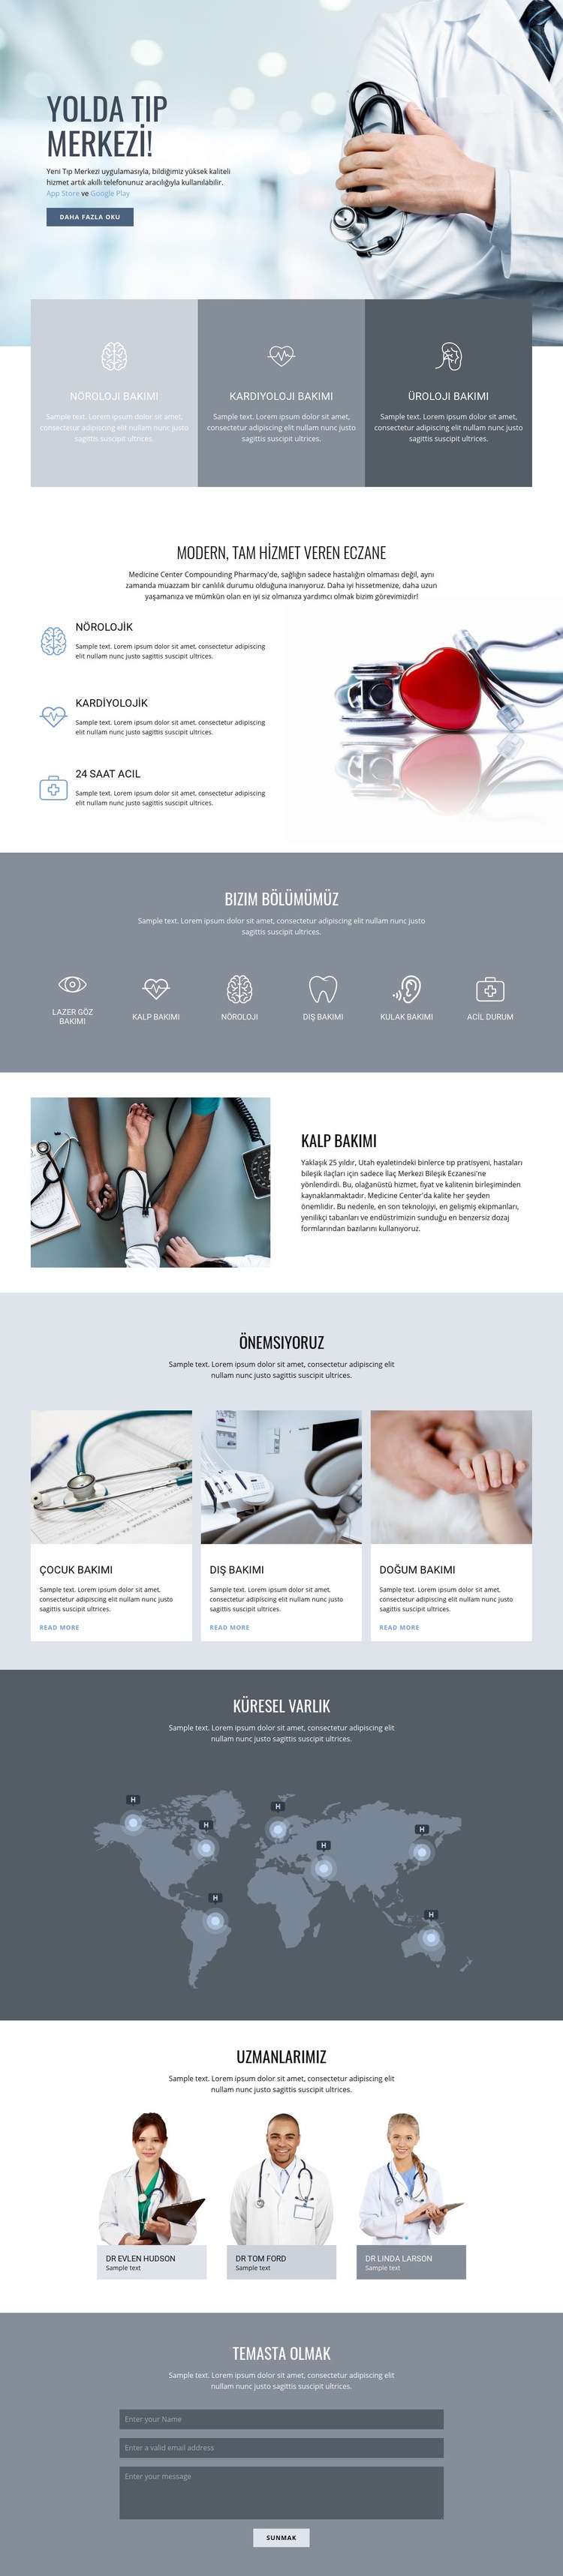 Kaliteli tıp merkezi Web sitesi tasarımı